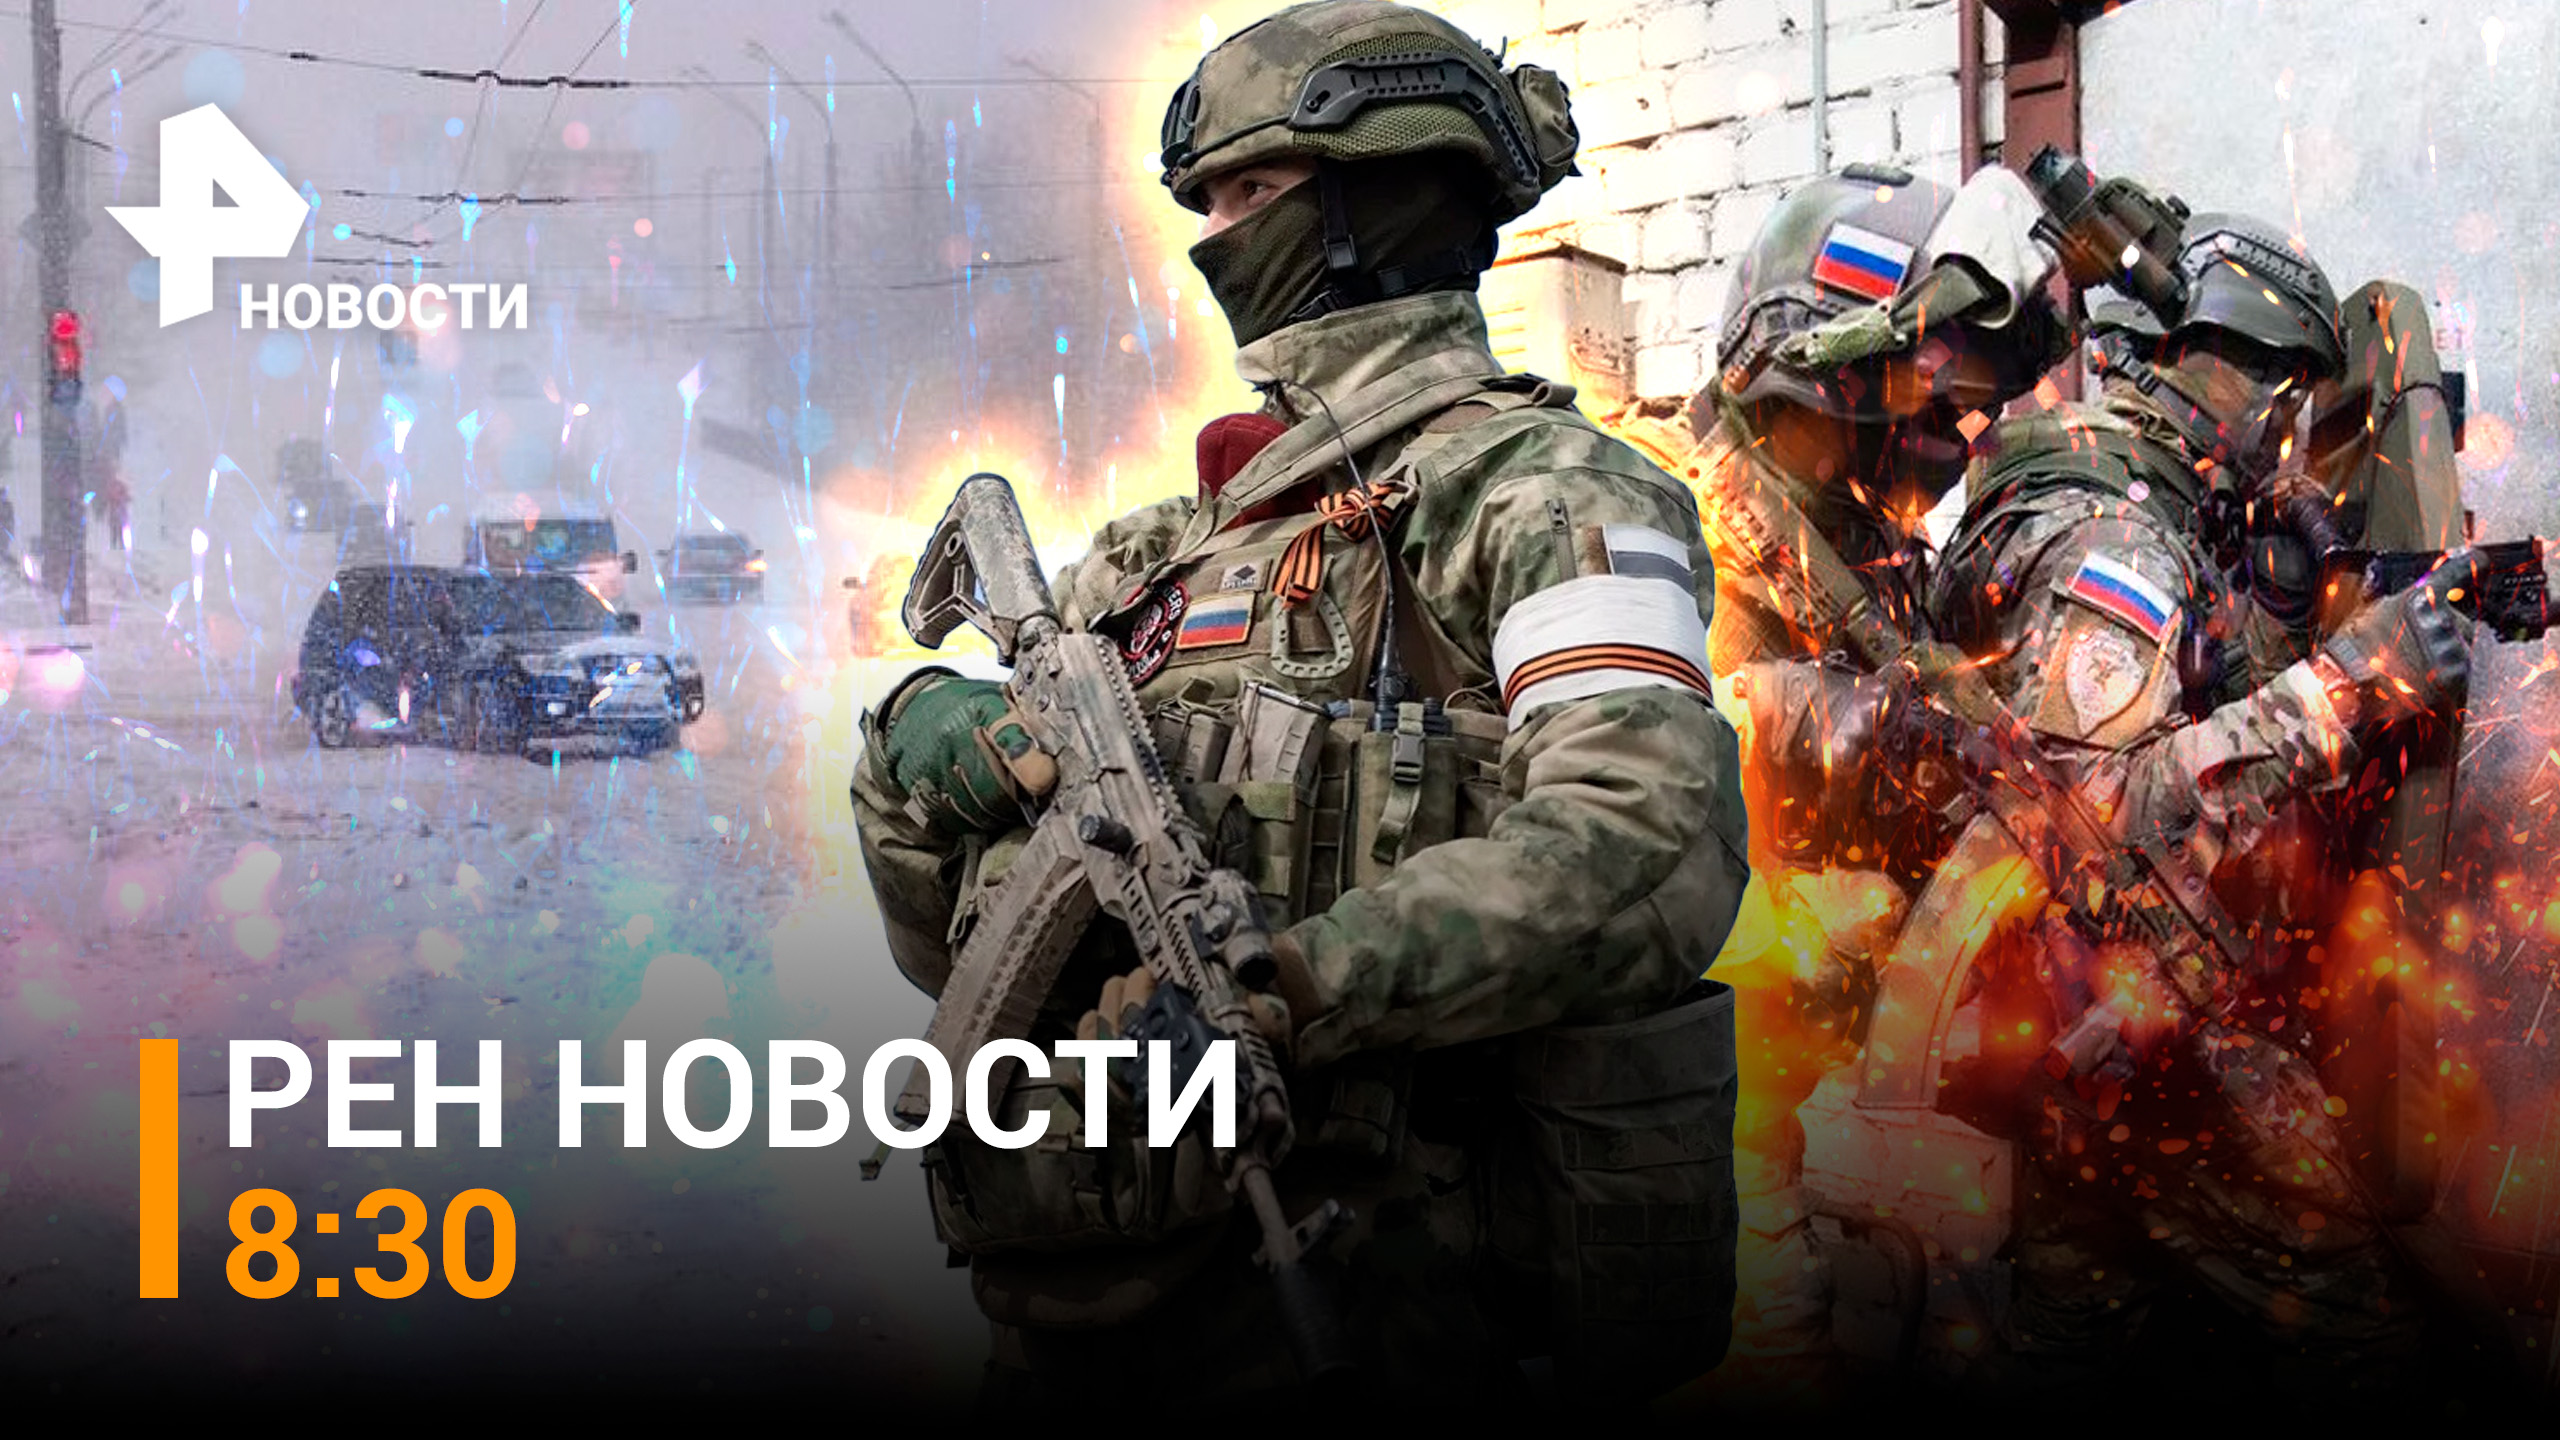 ФСБ остановили террористов-отравителей Киева / Камчатку терзает мощный циклон / РЕН Новости 14.03